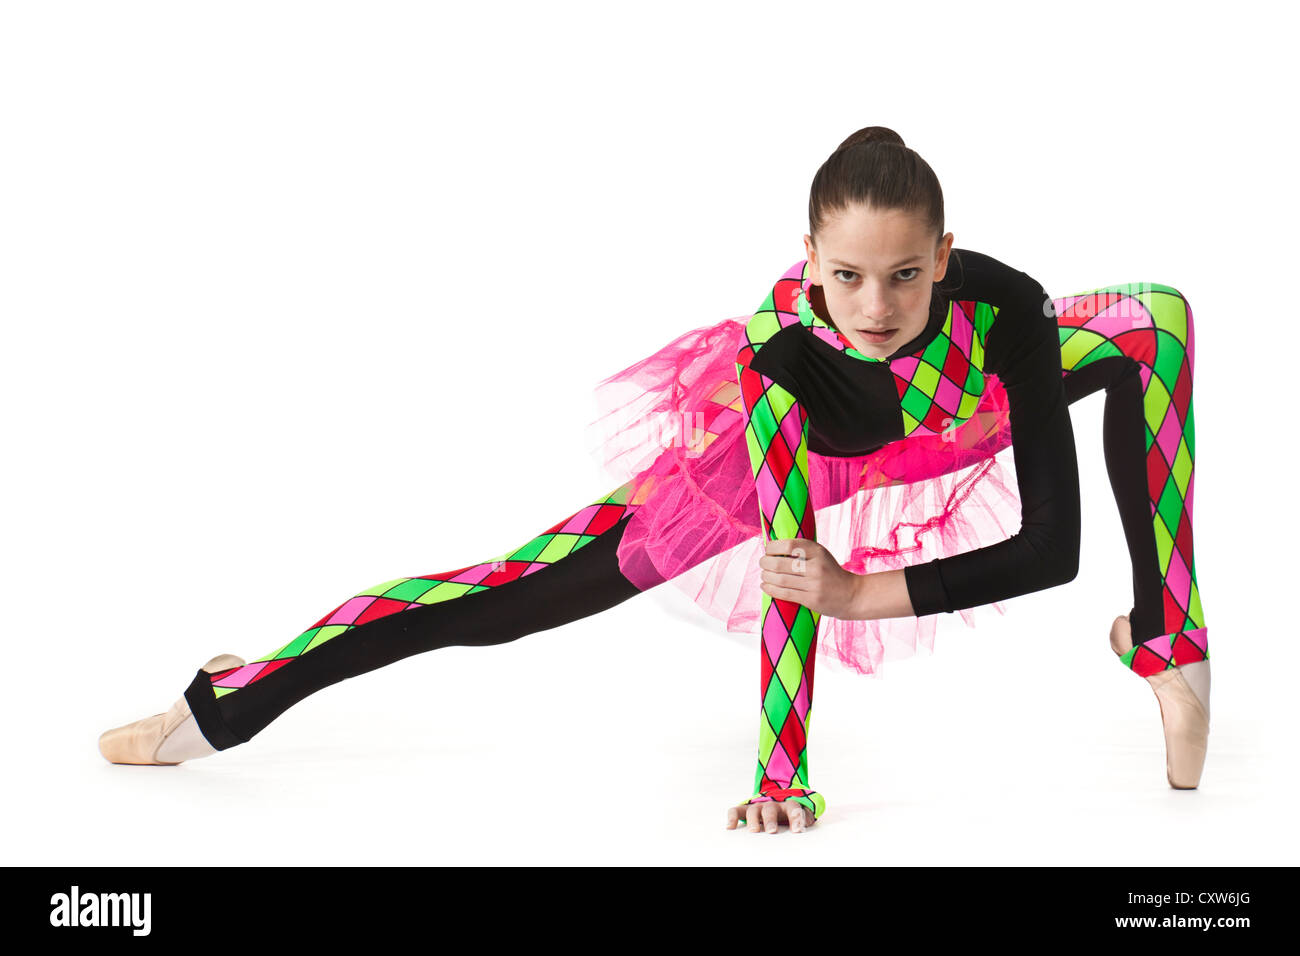 En bailarina adolescente moderno arlequín multicolores-patrón traje de ballet con compensación rosa Foto de stock